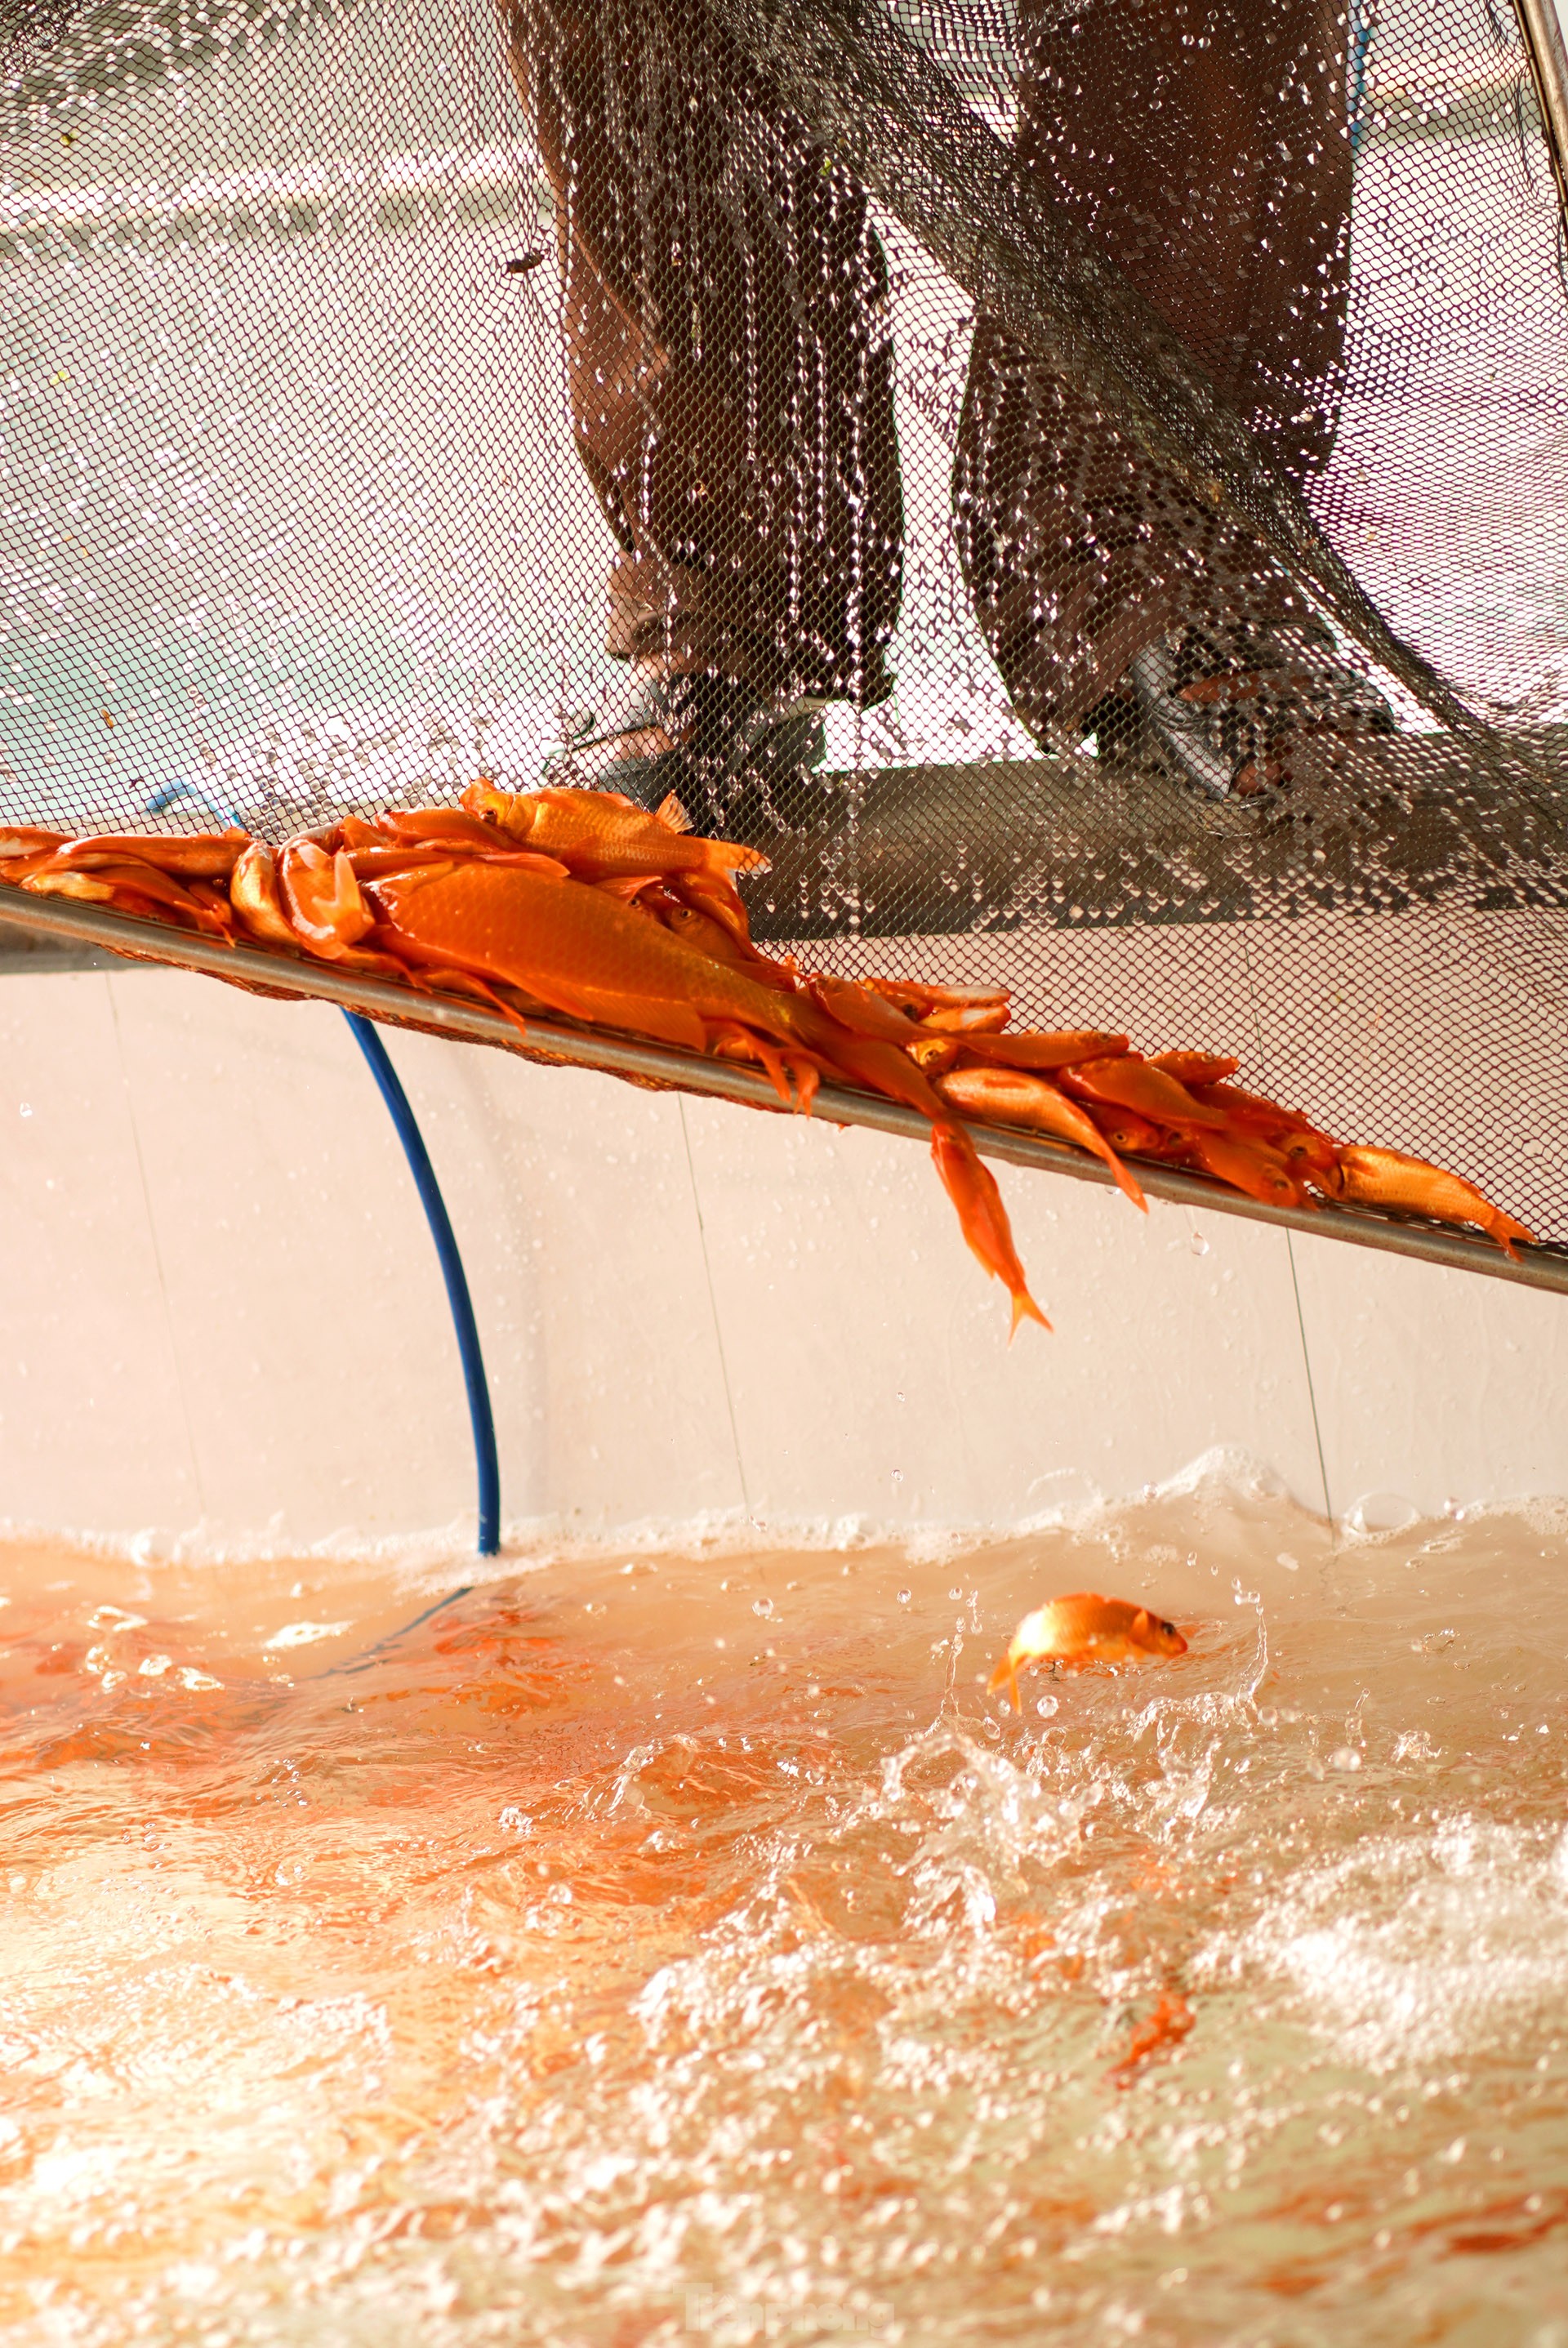 Làng cá chép đỏ nổi tiếng Phú Thọ rộn ràng dịp ông Công ông Táo - Ảnh 11.